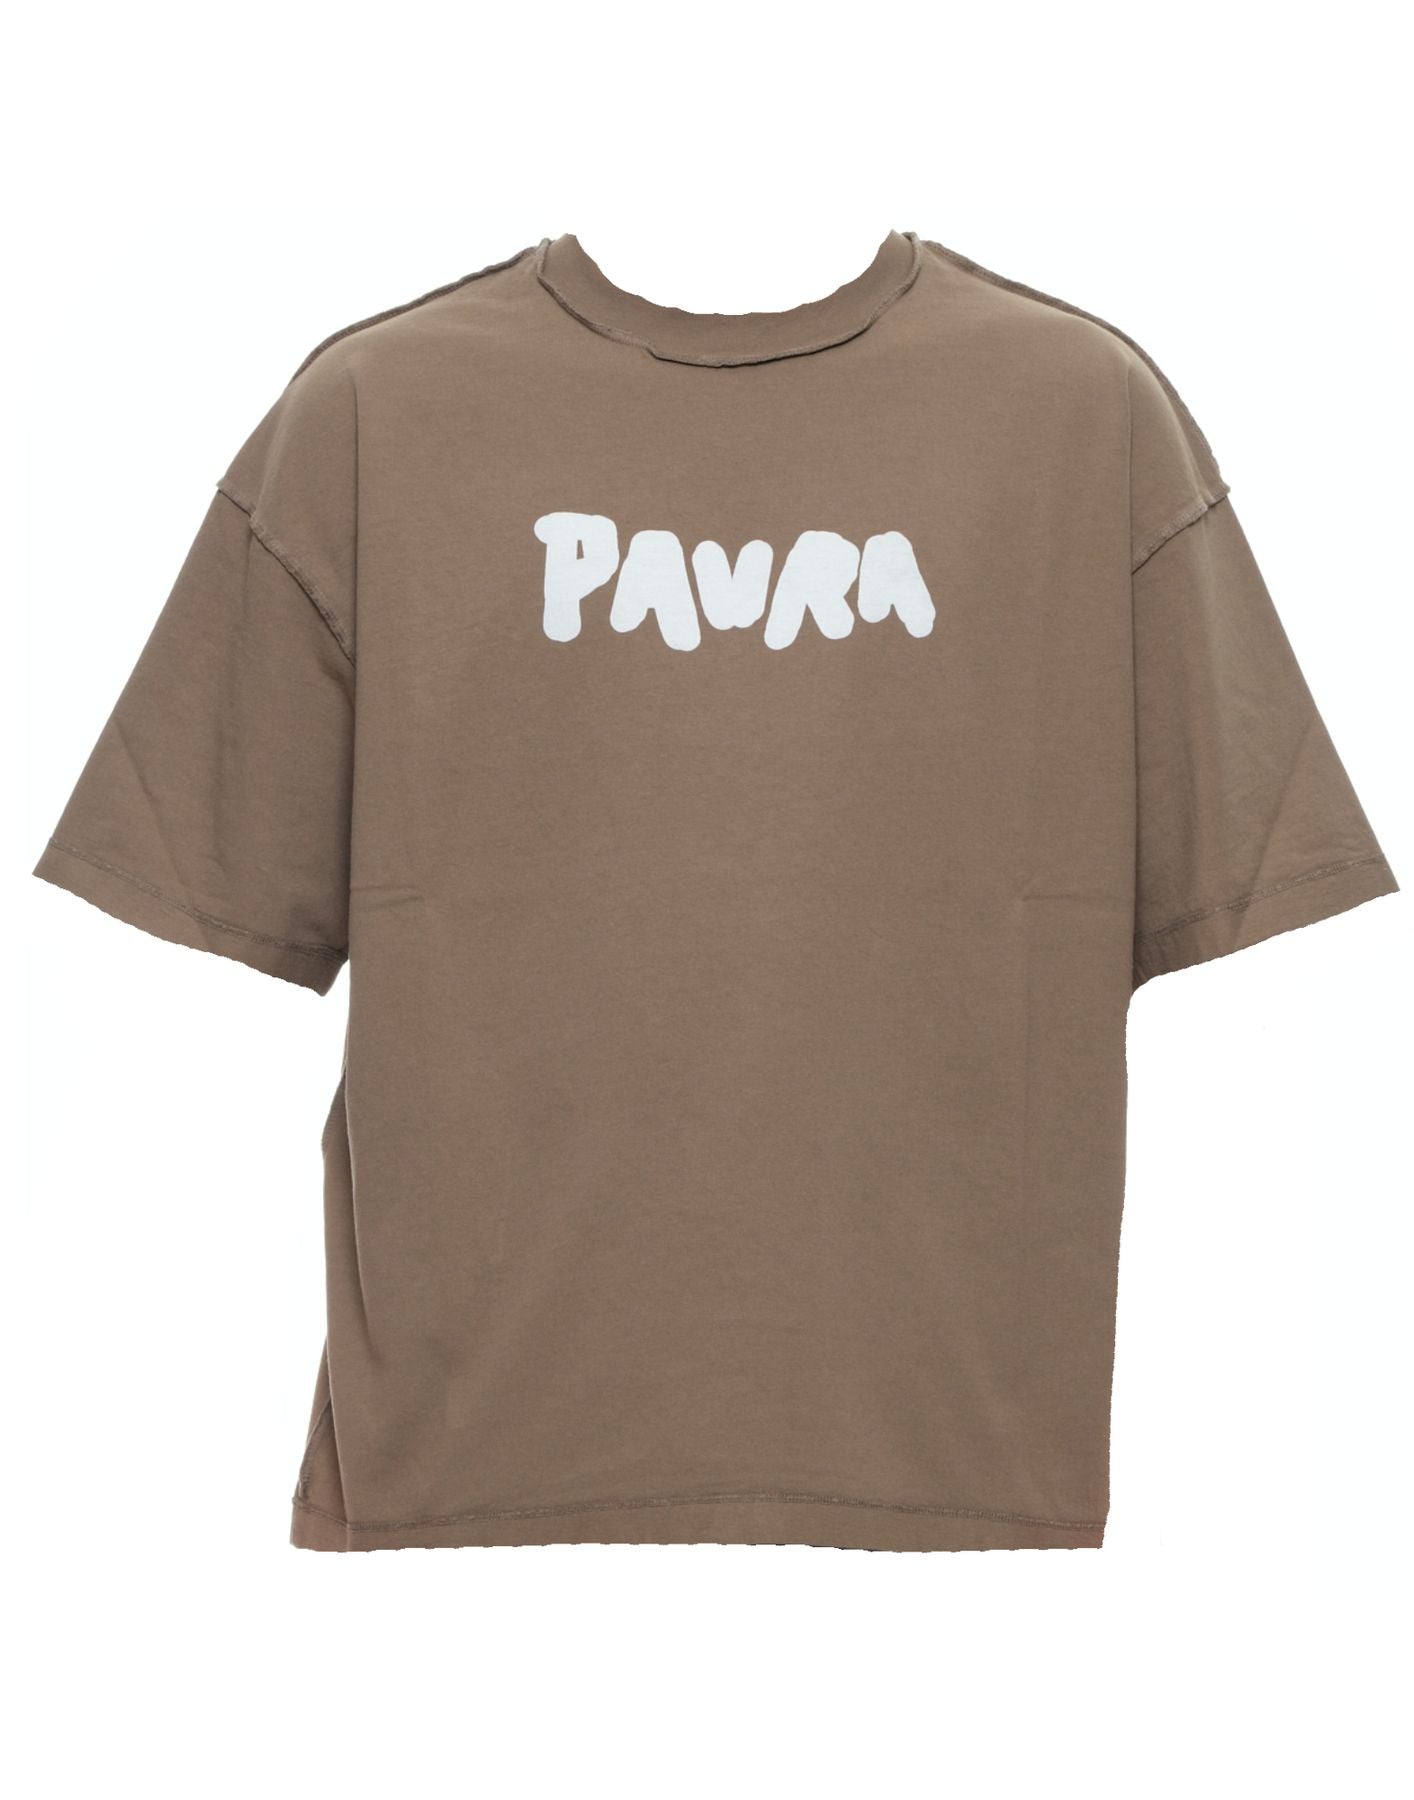 T-shirt man T-SHIRT BOLD COSTA OVERSIZED PAURA